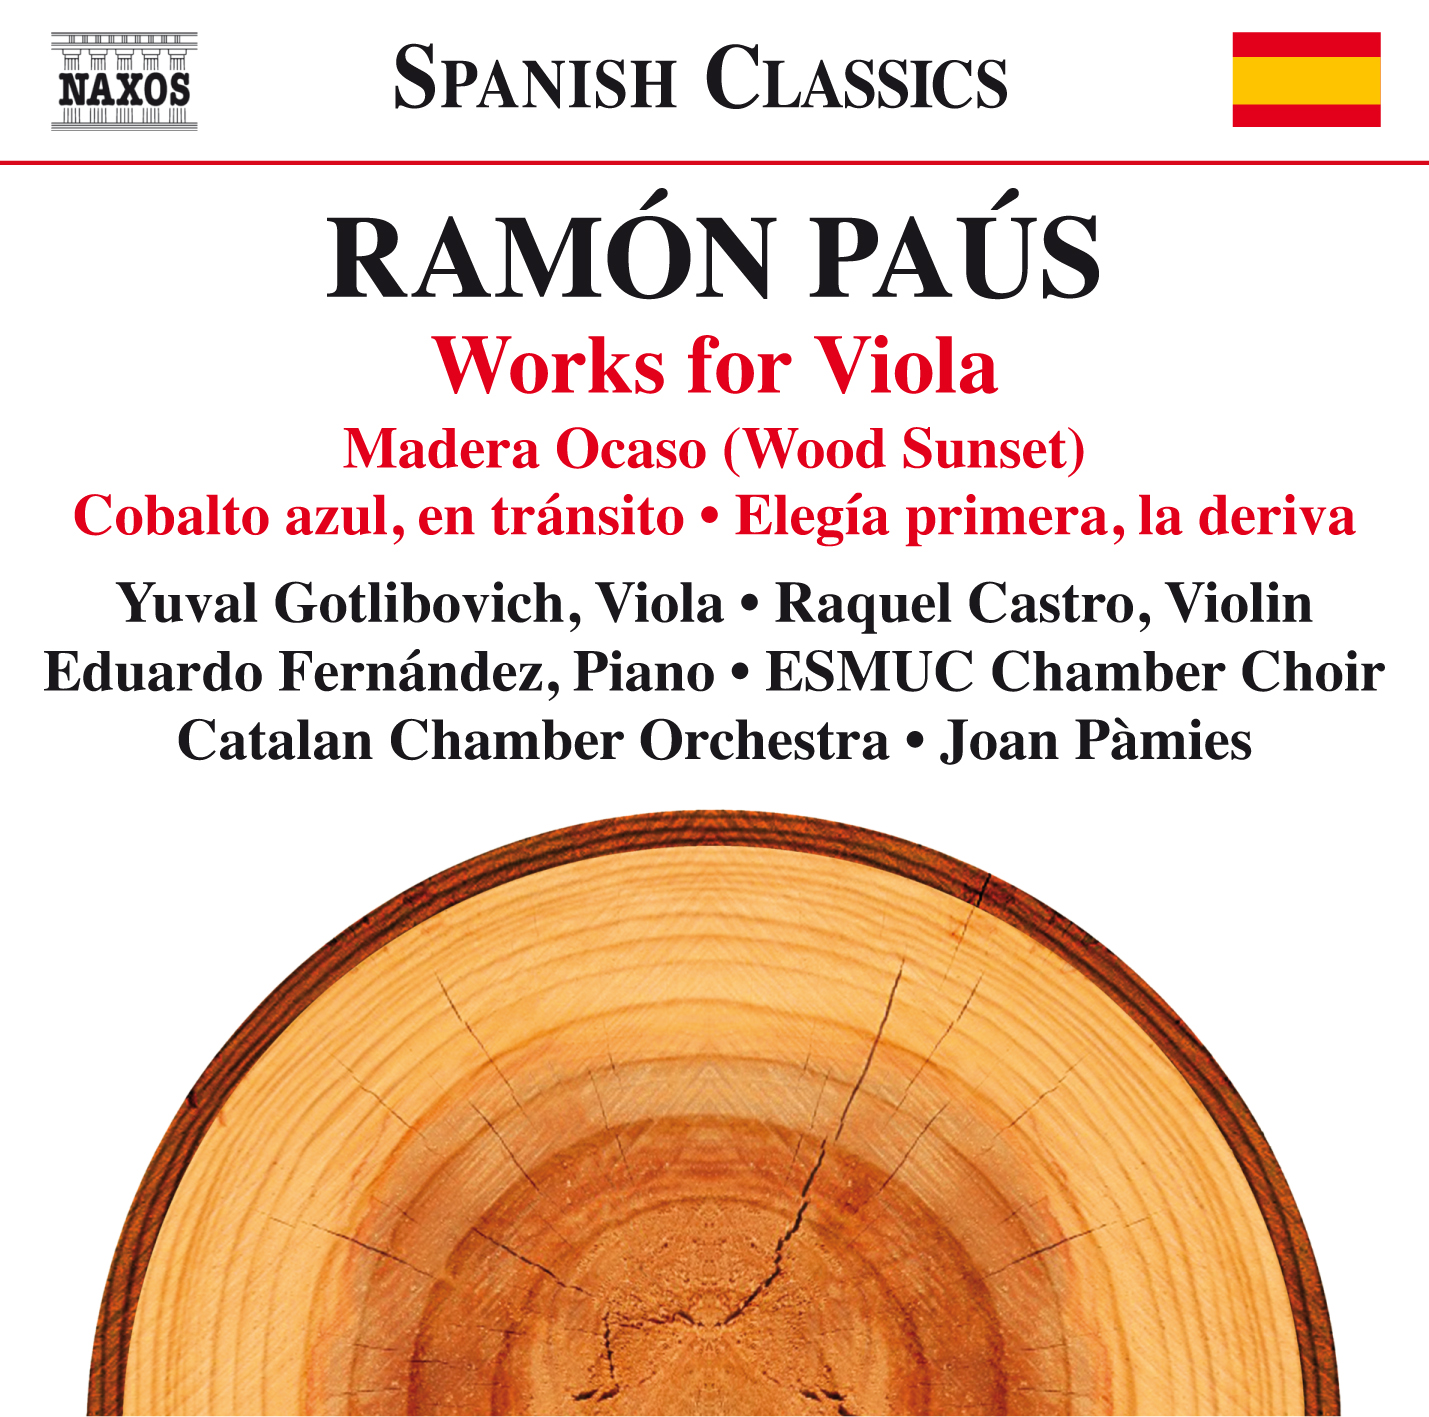 El nuevo CD de Ramón Paus: Viola Works entre los 10 top de Naxos